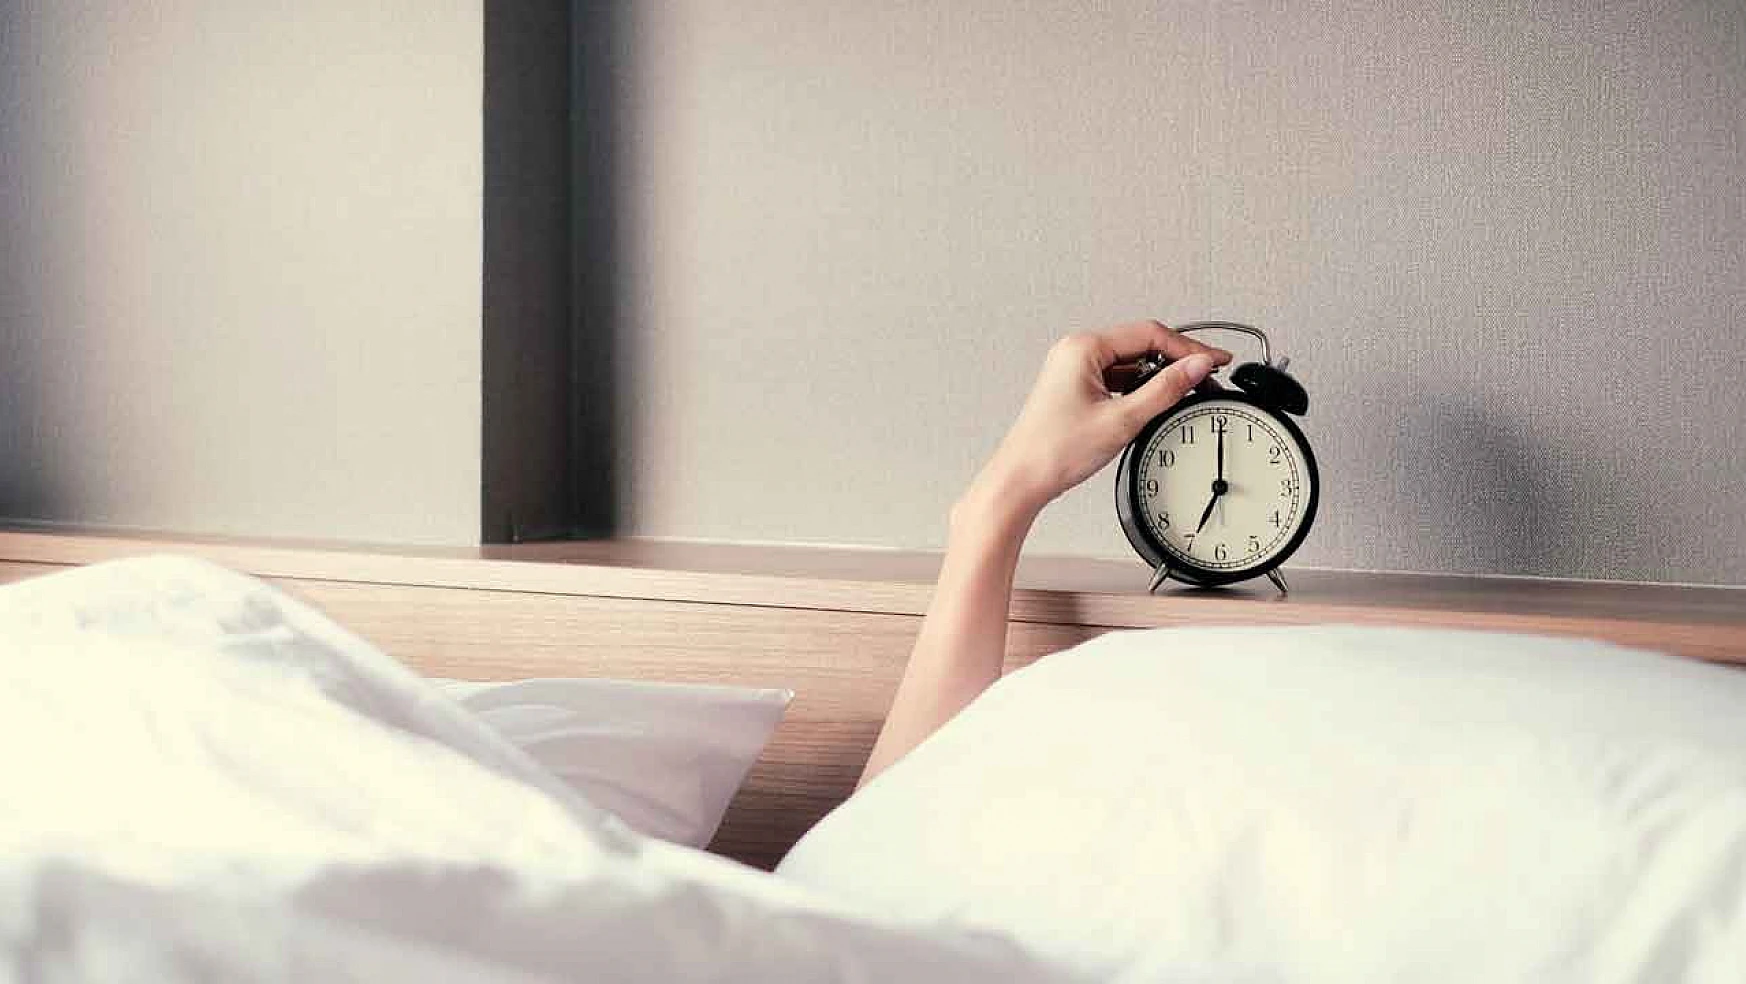 Sabahları dinç uyanmanın 7 etkili yolu: Bunları mutlaka denemelisiniz!